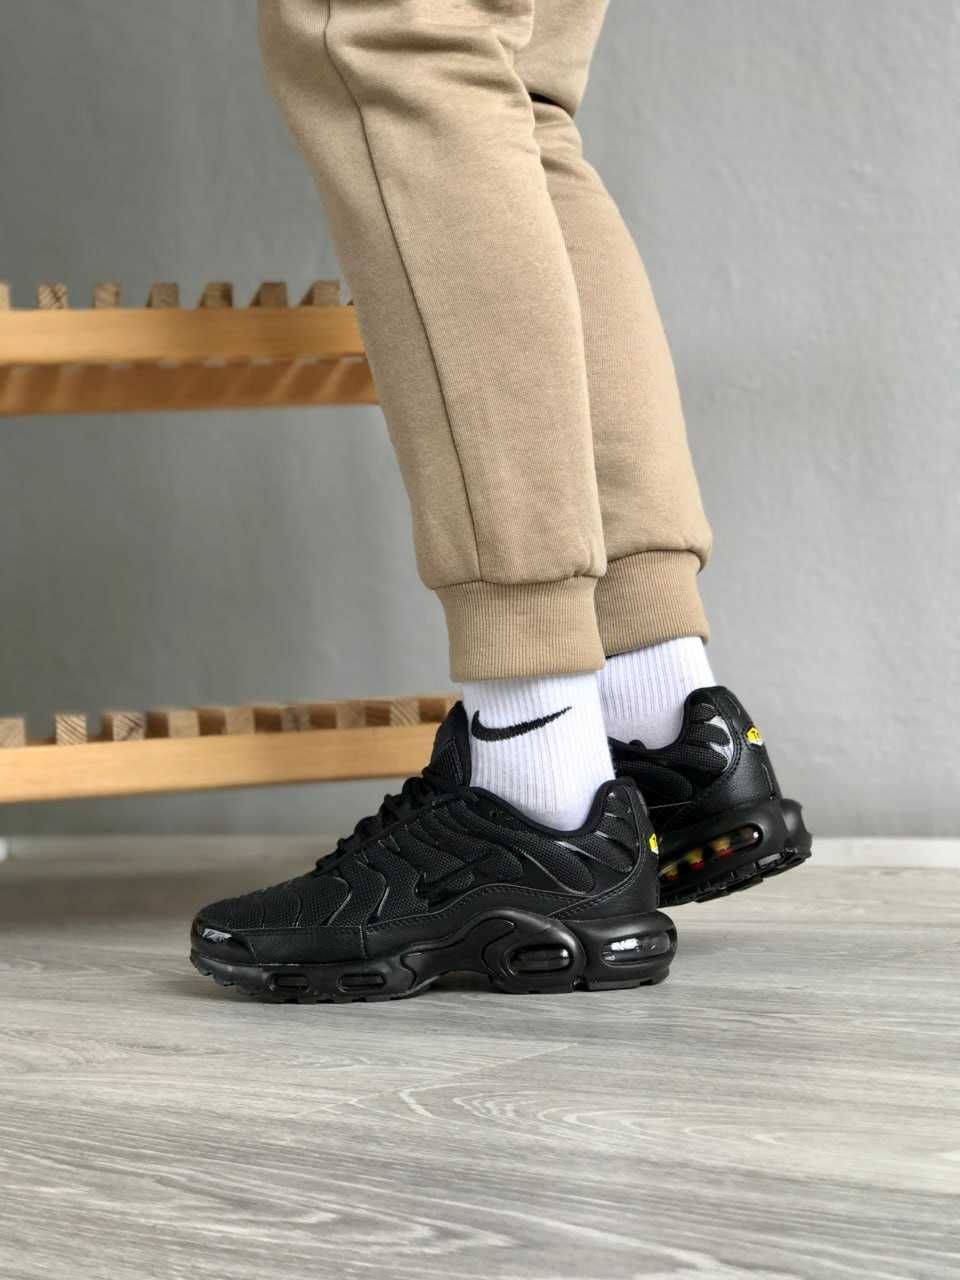 Кросівки чоловічі шкіряні Nike Tn + black / красовки Найк Тн + чорні